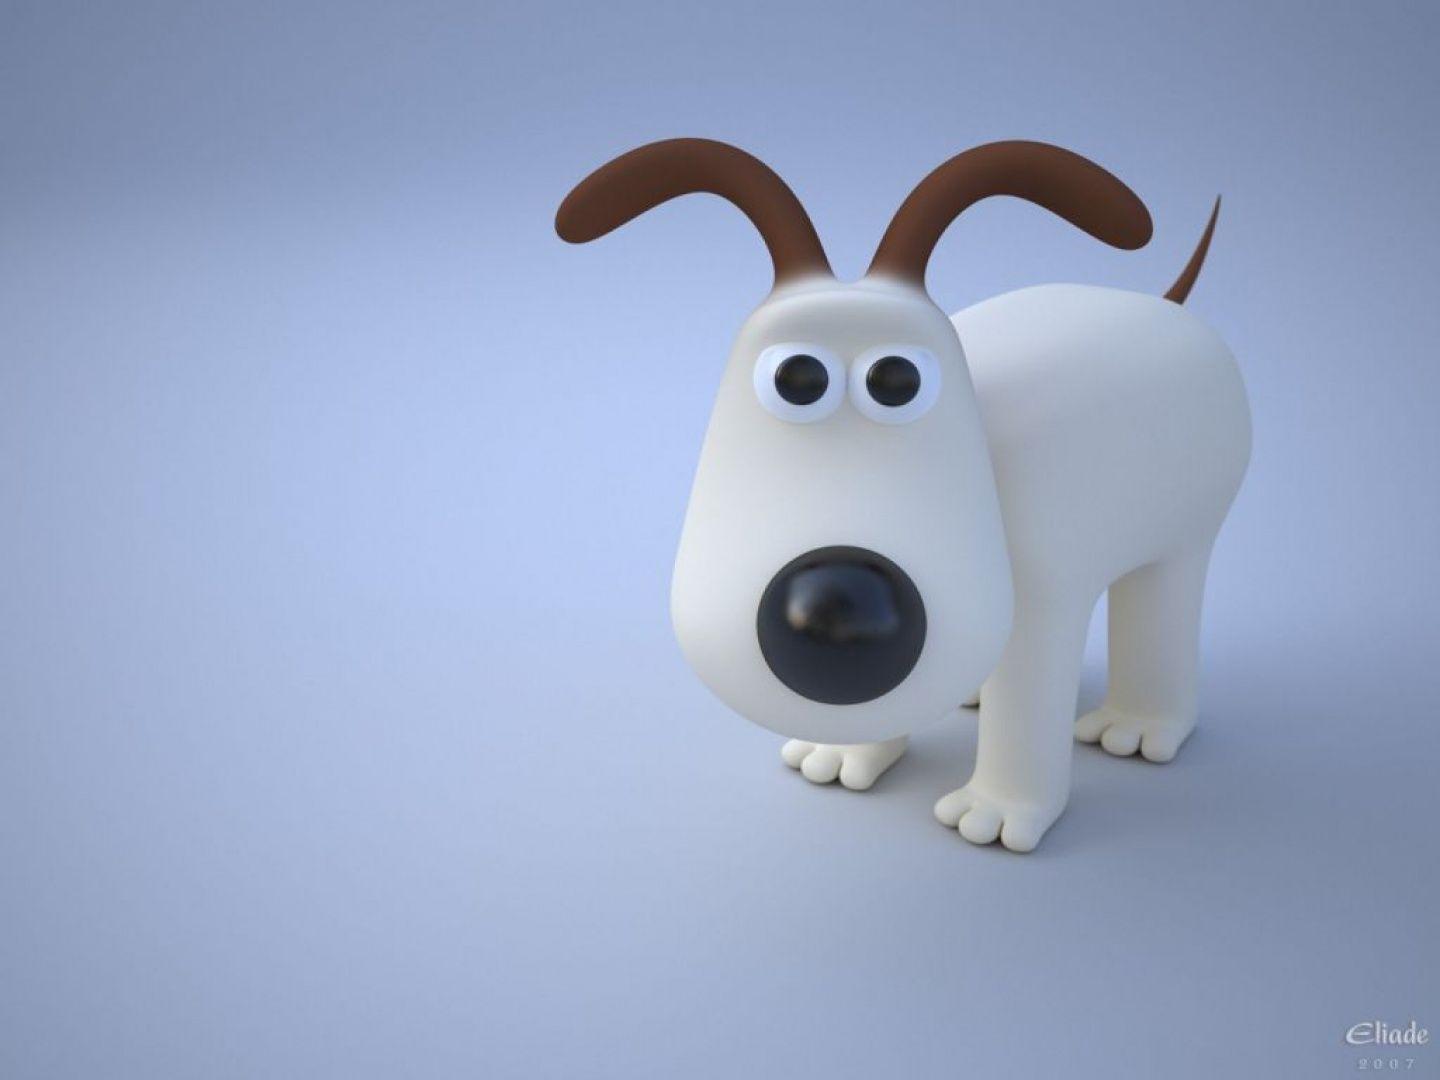 Download 3D Snoopy Wallpaper Elegant Free For Desktop Mobile